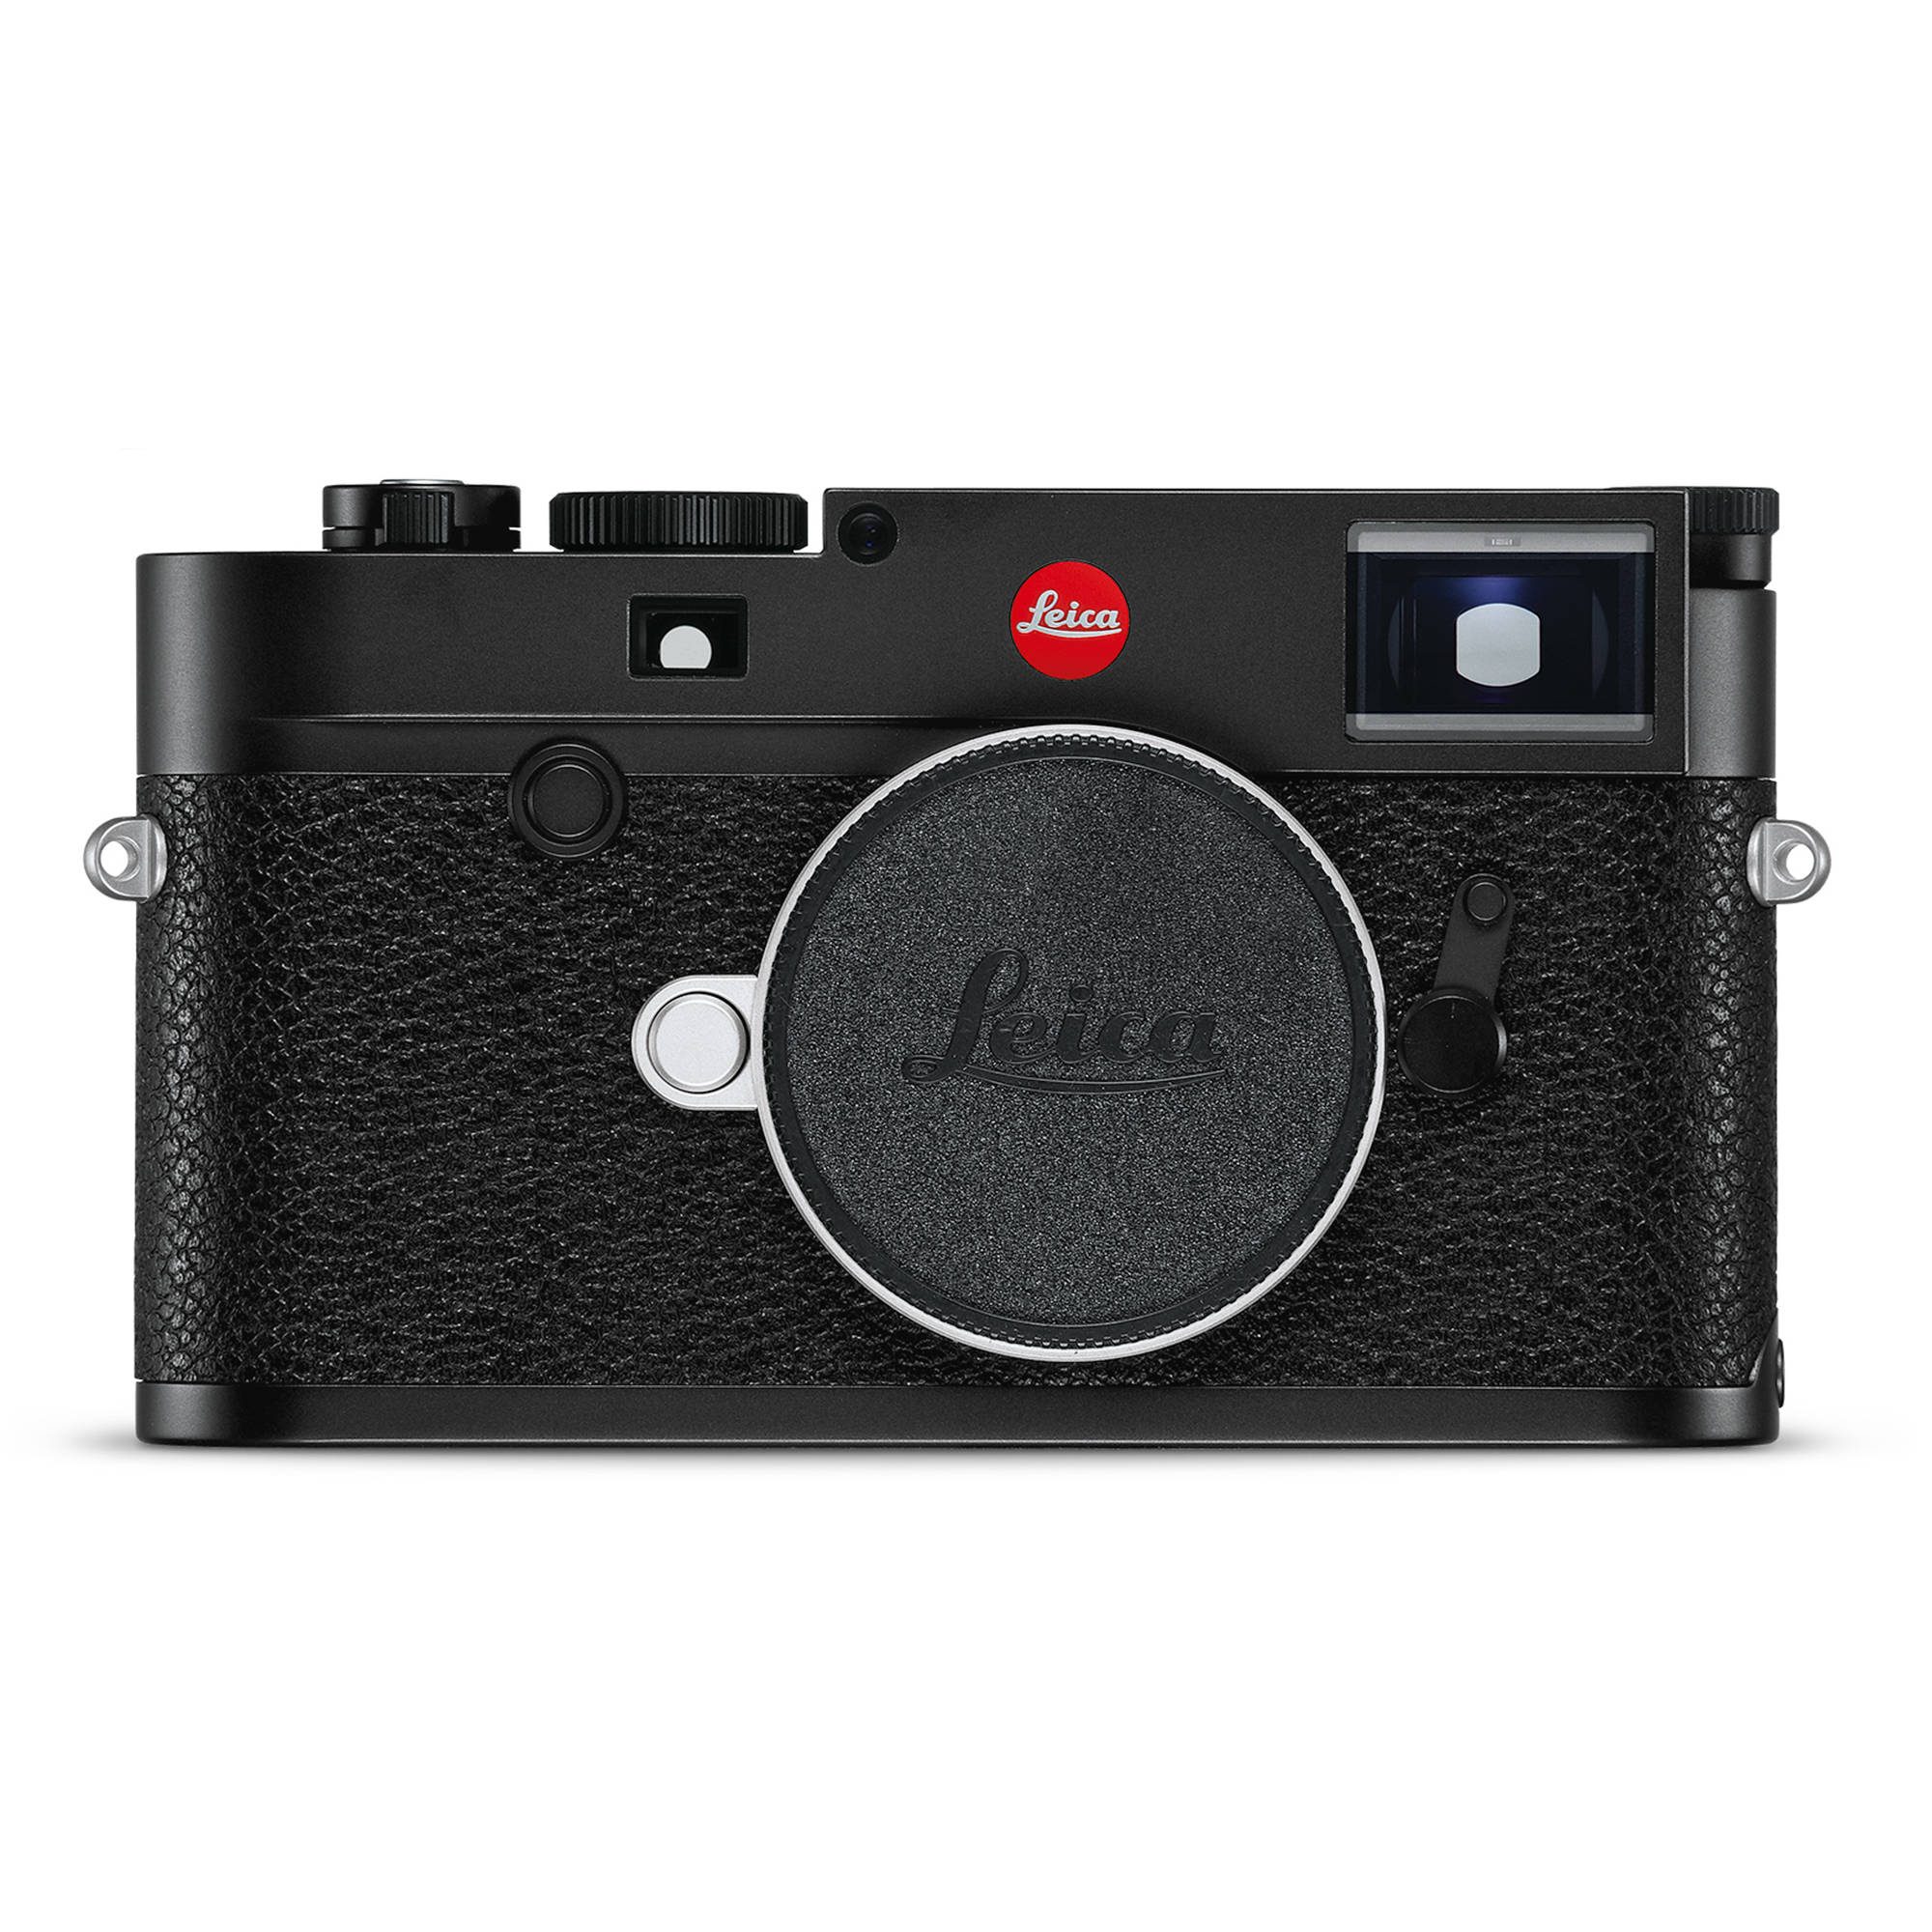 Leica M10 camera manual download